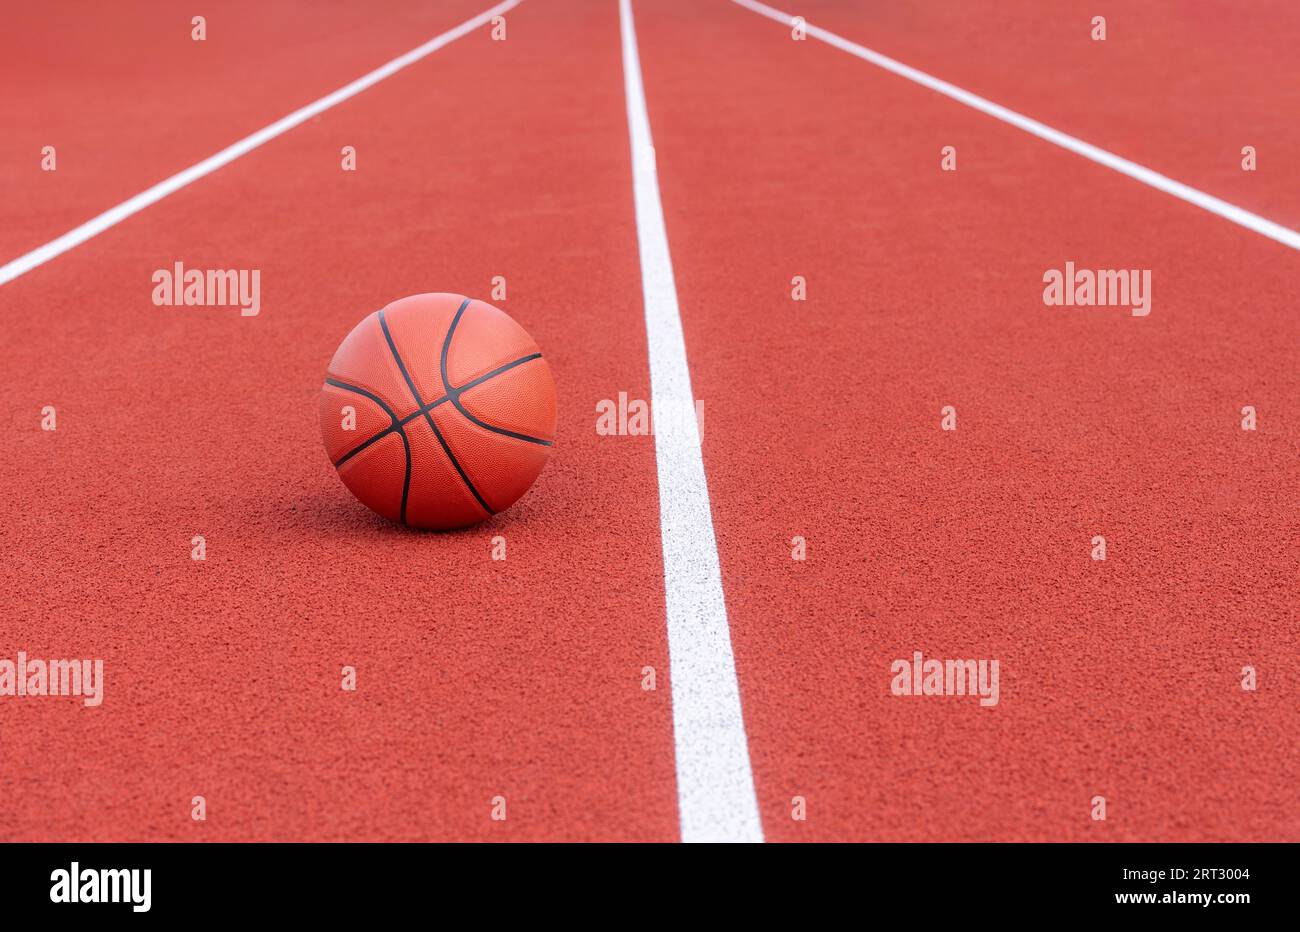 Neuer orangener Basketball auf orangenem Sportplatz des Gymnasiums. Horizontales Sportmotiv-Poster, Grußkarten, Kopfzeilen, Website und App Stockfoto